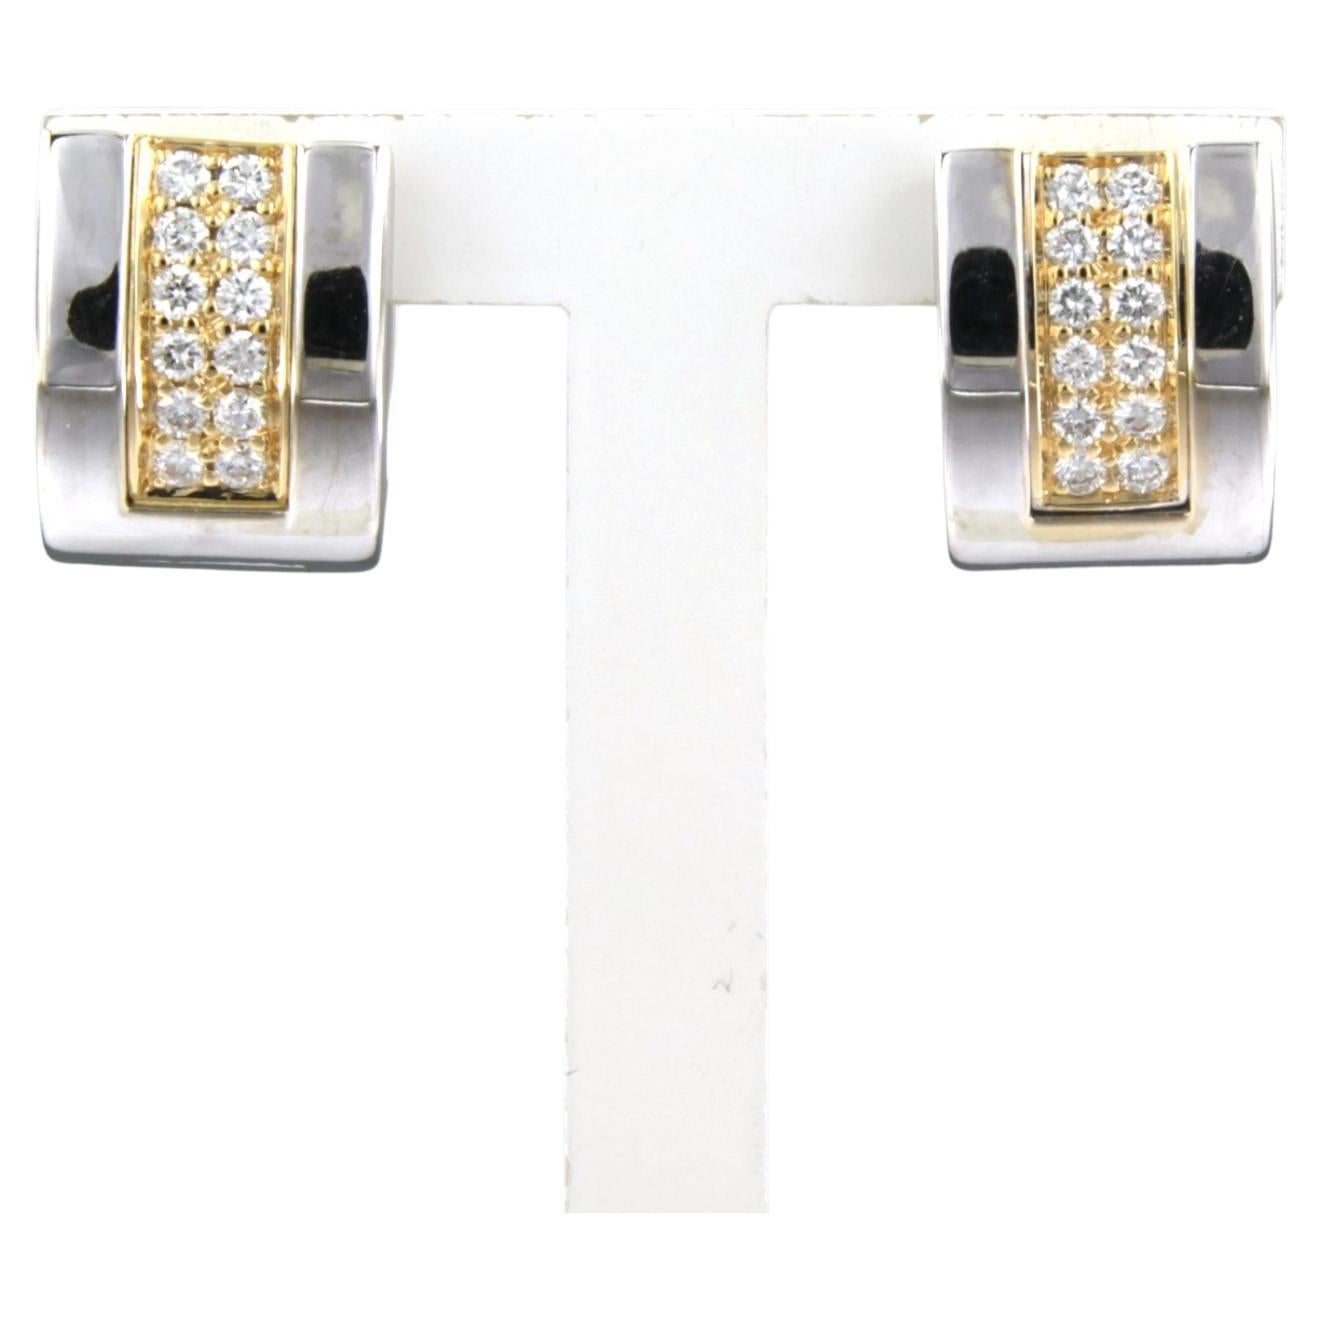 LECHIC - 18k bicolour gold ear clips set with brilliant cut diamonds